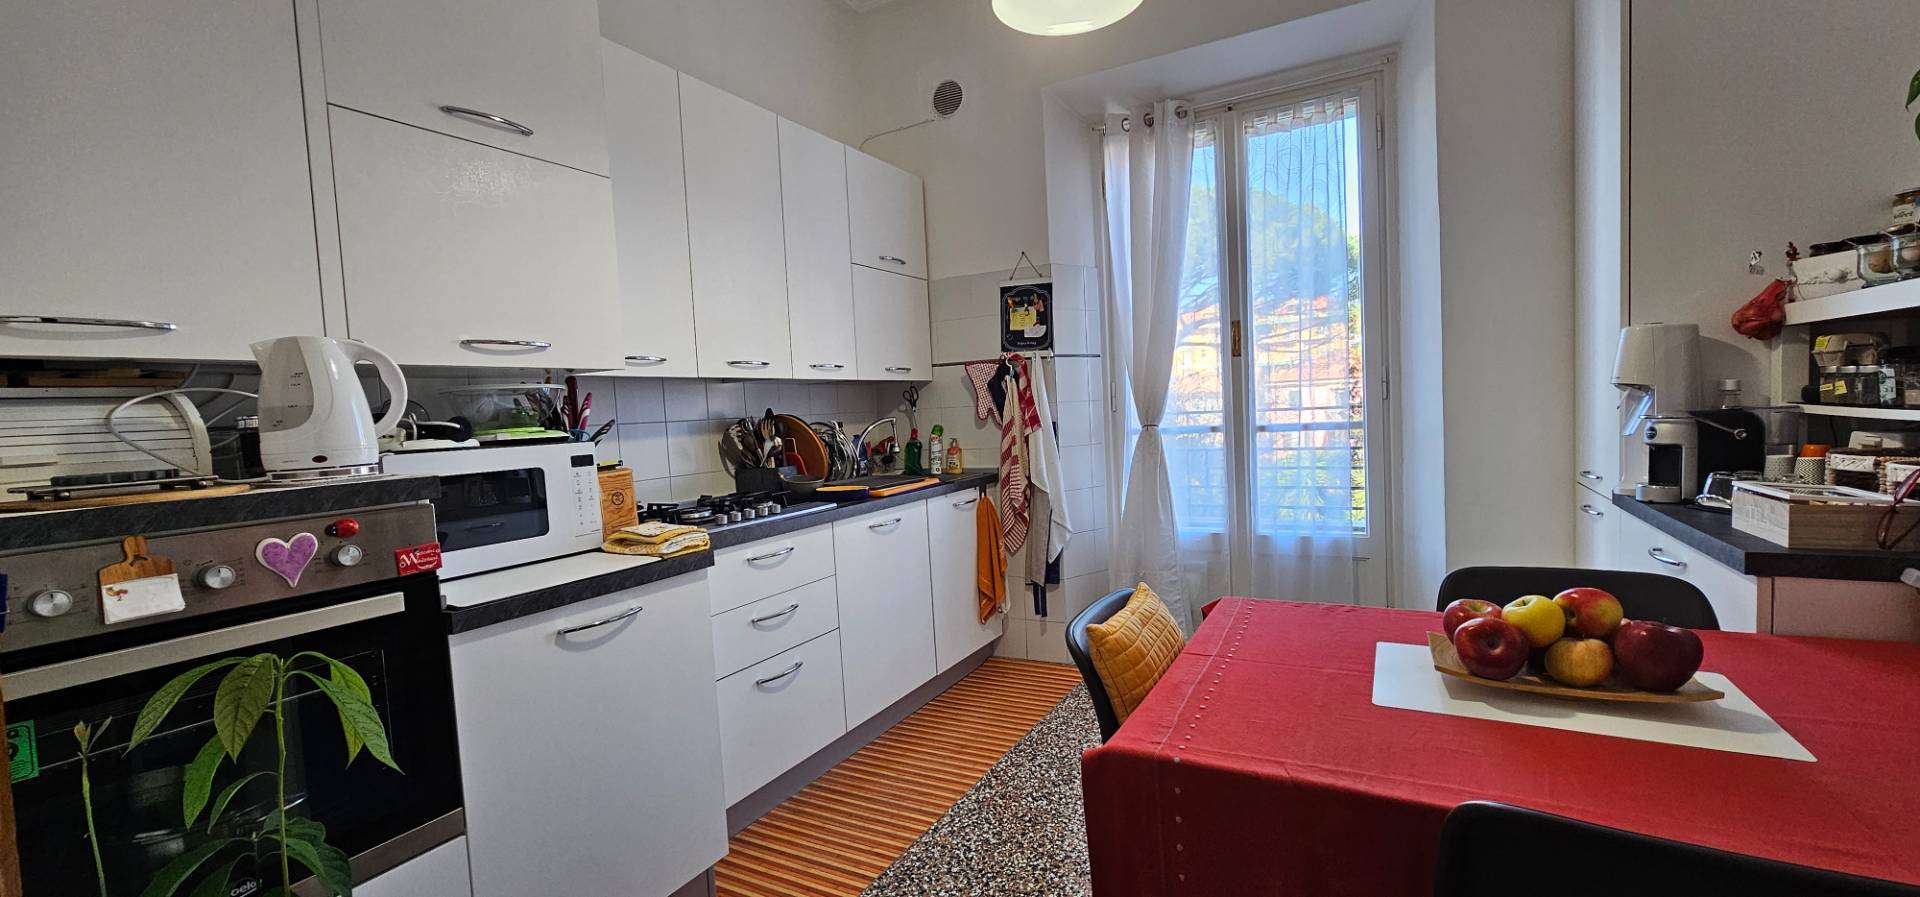 Appartamento in affitto a Lavagna, 5 locali, prezzo € 900 | PortaleAgenzieImmobiliari.it